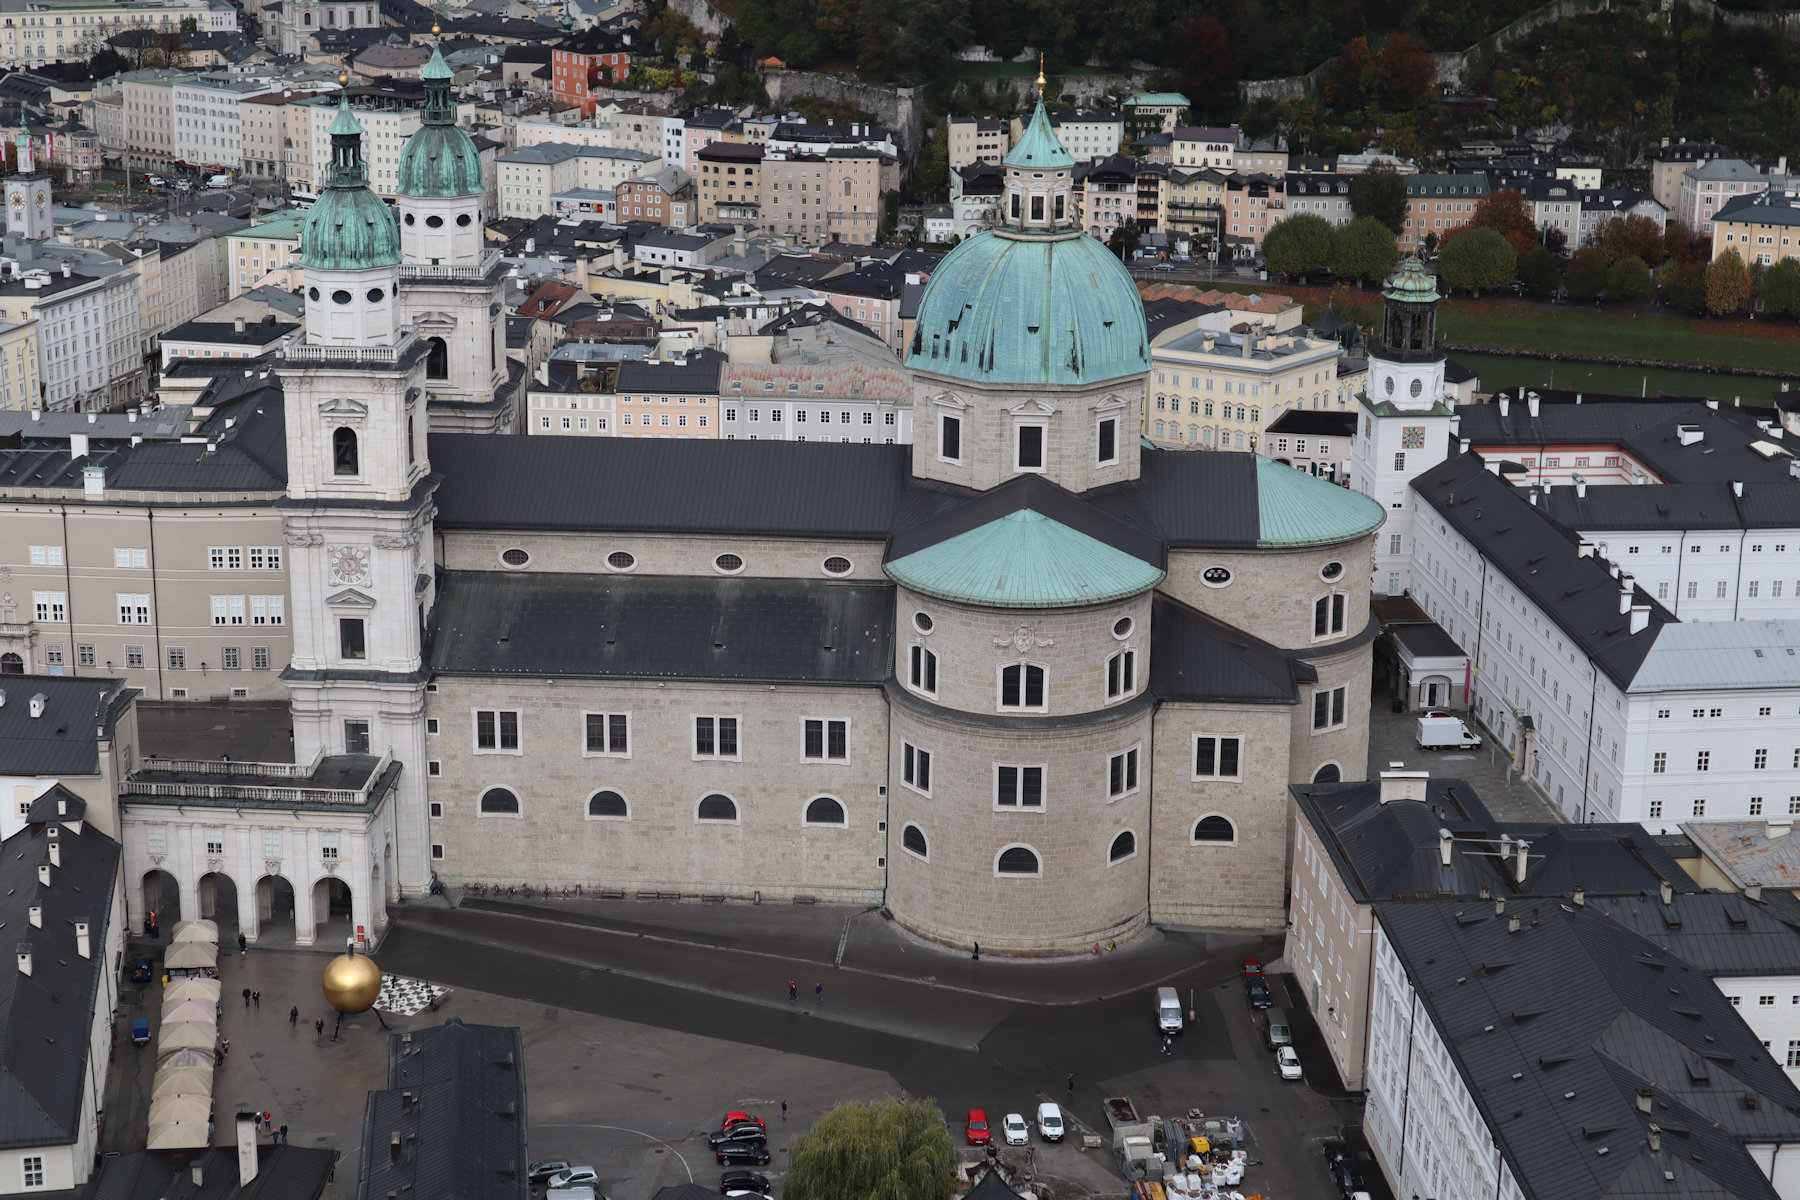 Dom in Salzburg, von der Festung Hohensalzburg aus gesehen